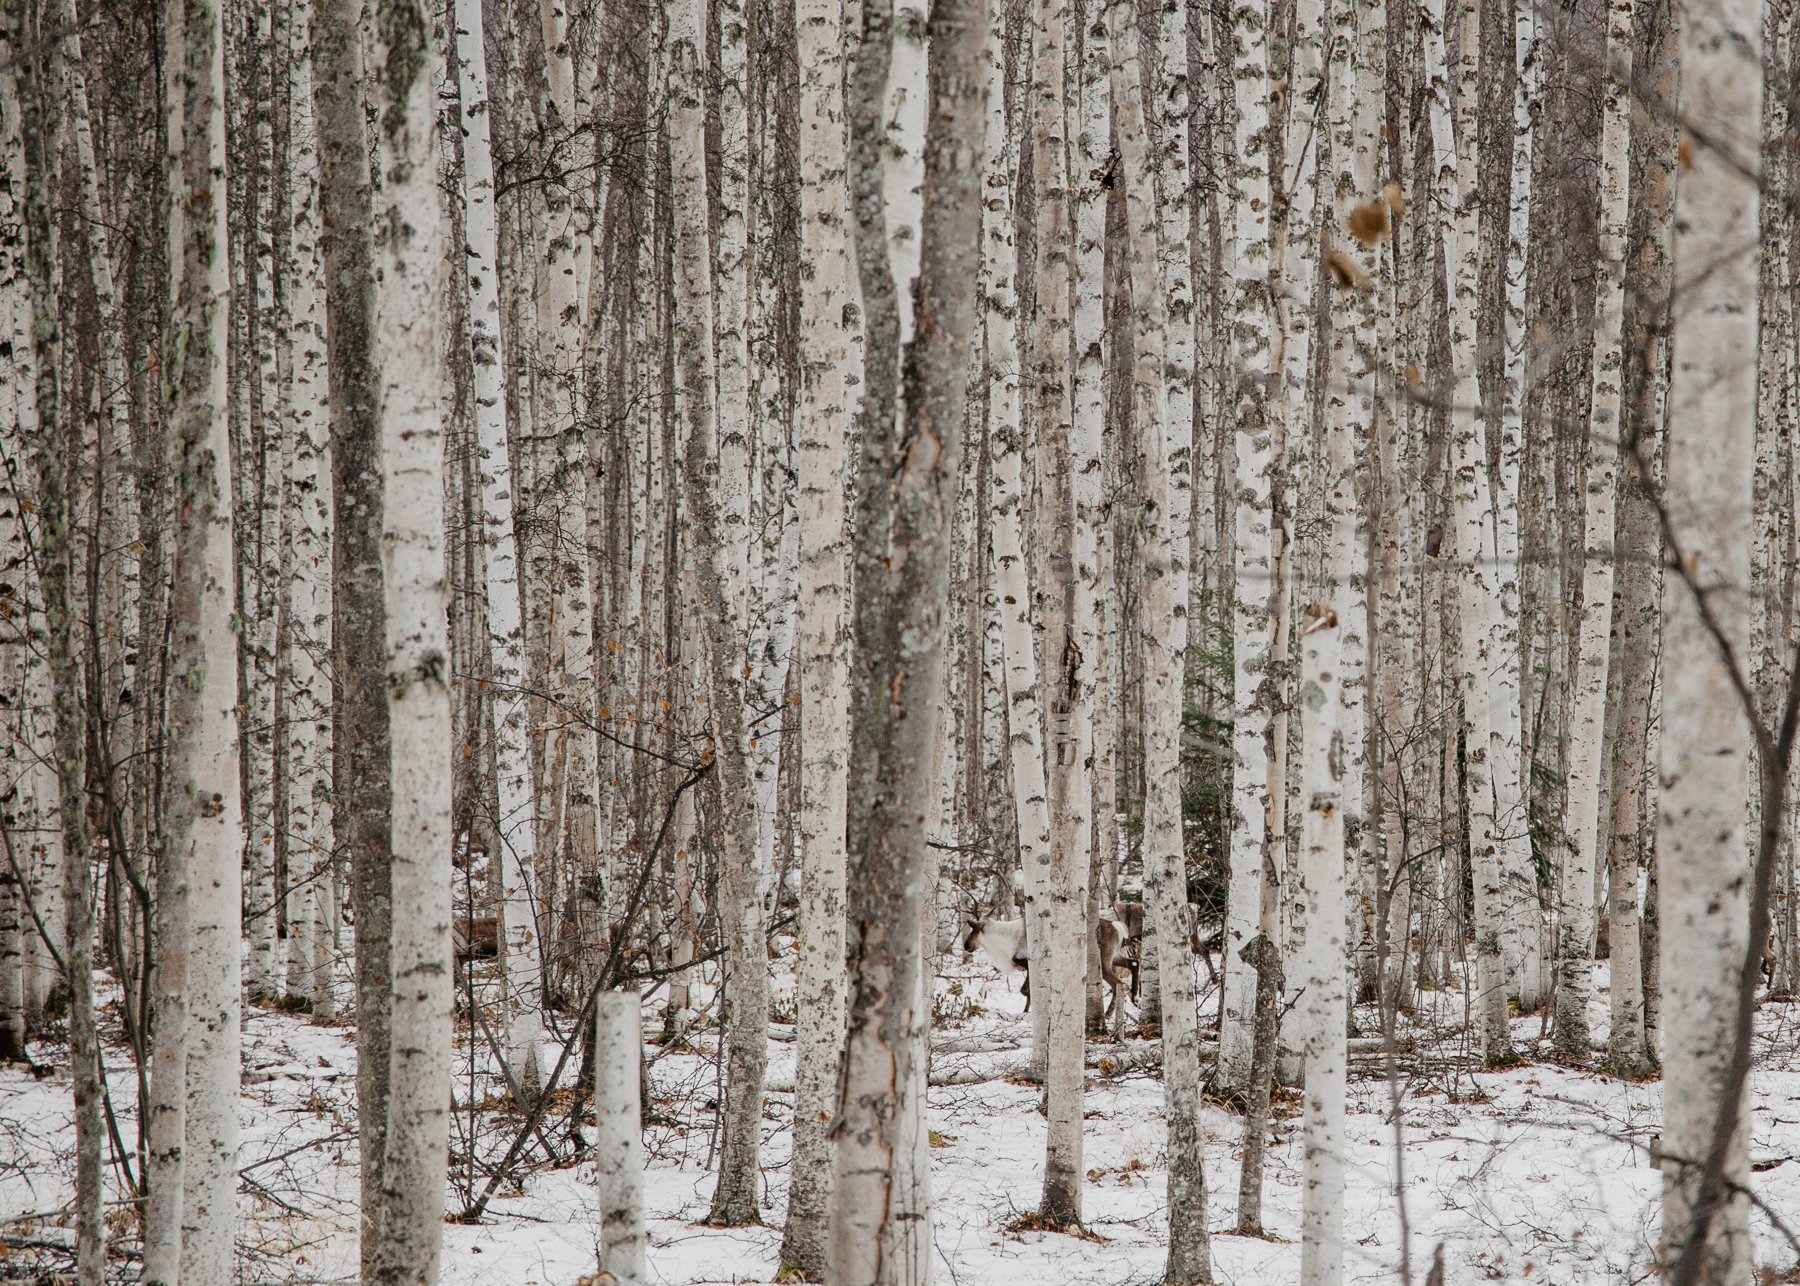 Animal camouflages in winter scene of dense aspen trees.